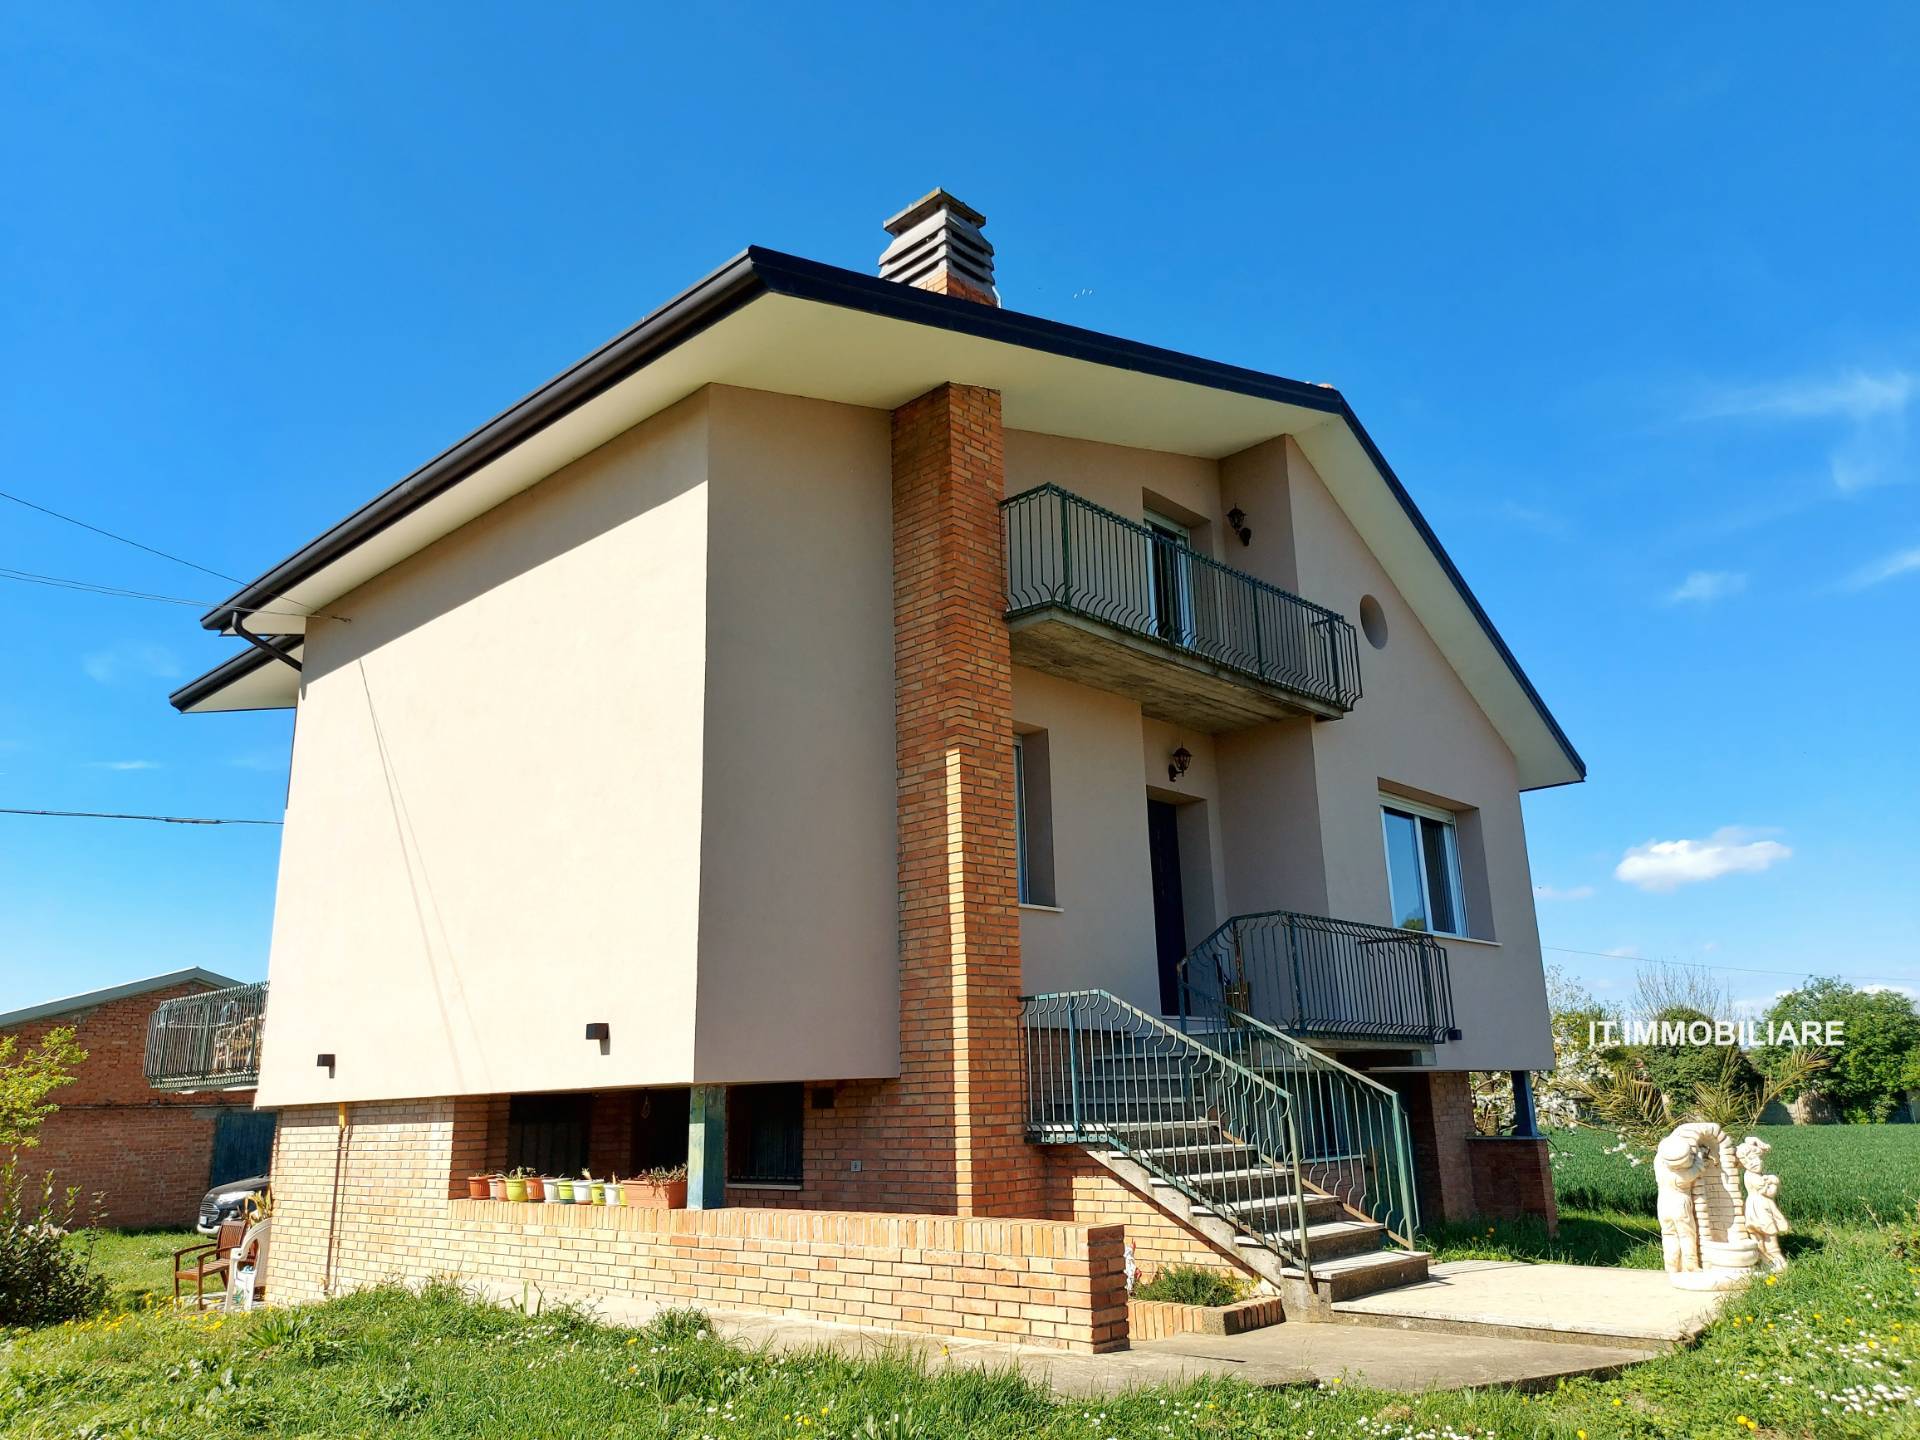 Villa in vendita a Forlì, 7 locali, zona Località: Branzolino, prezzo € 450.000 | PortaleAgenzieImmobiliari.it